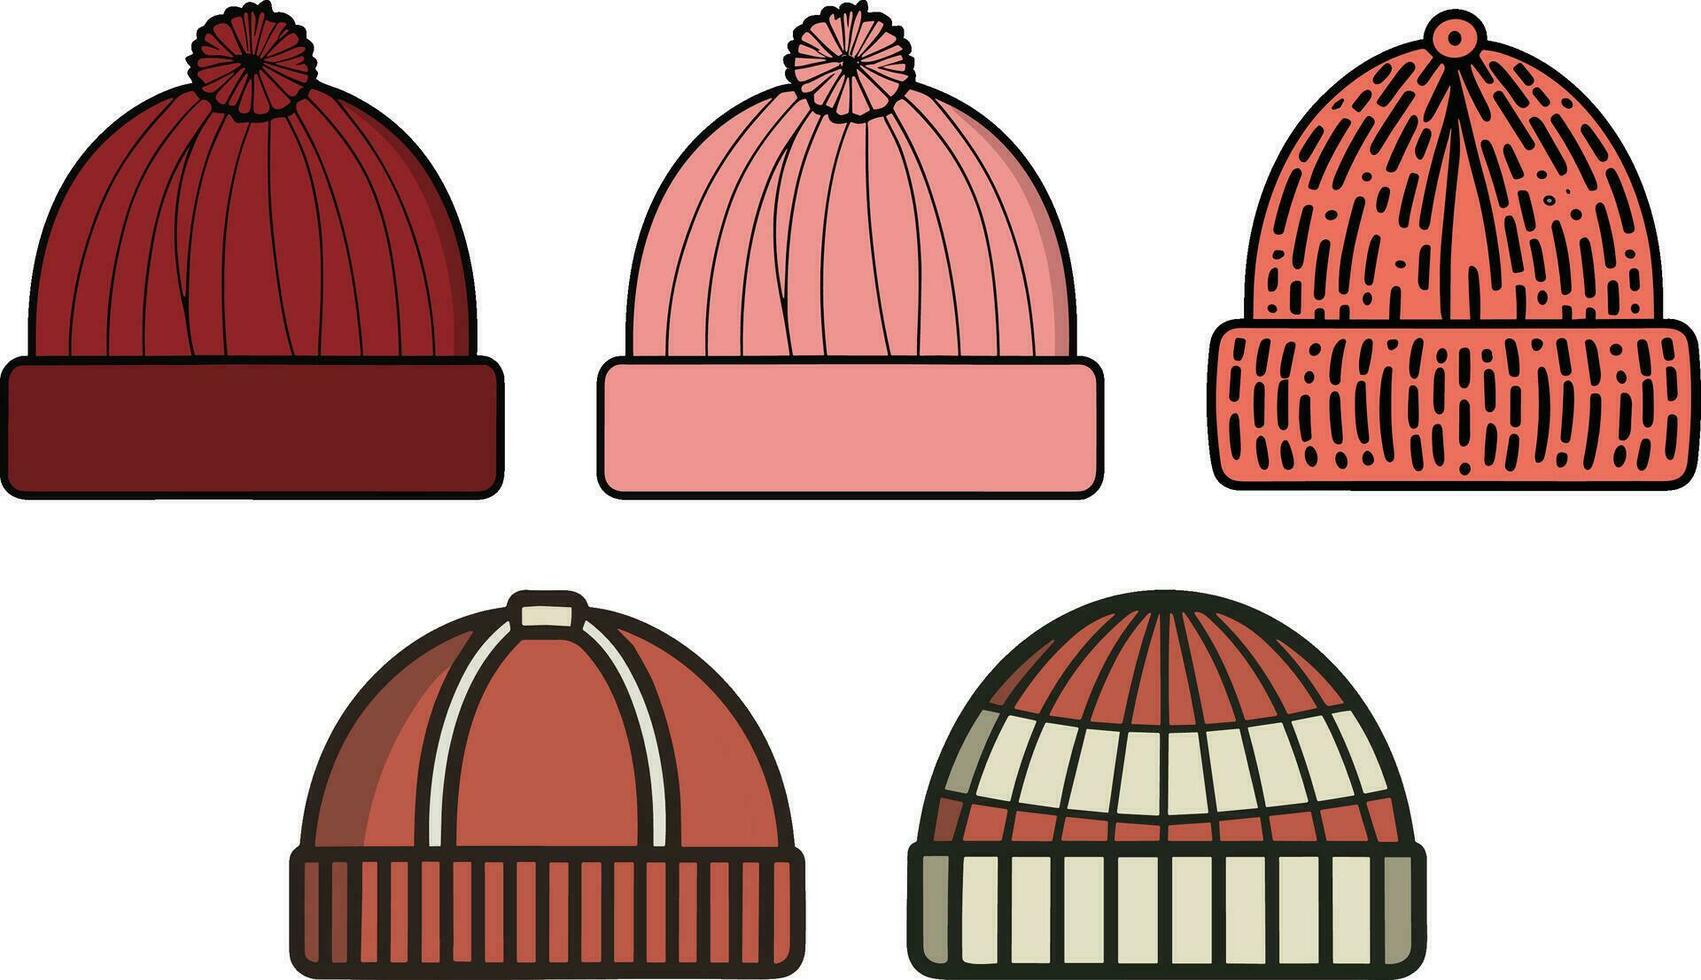 vier verschillend hoeden met verschillend kleuren vector